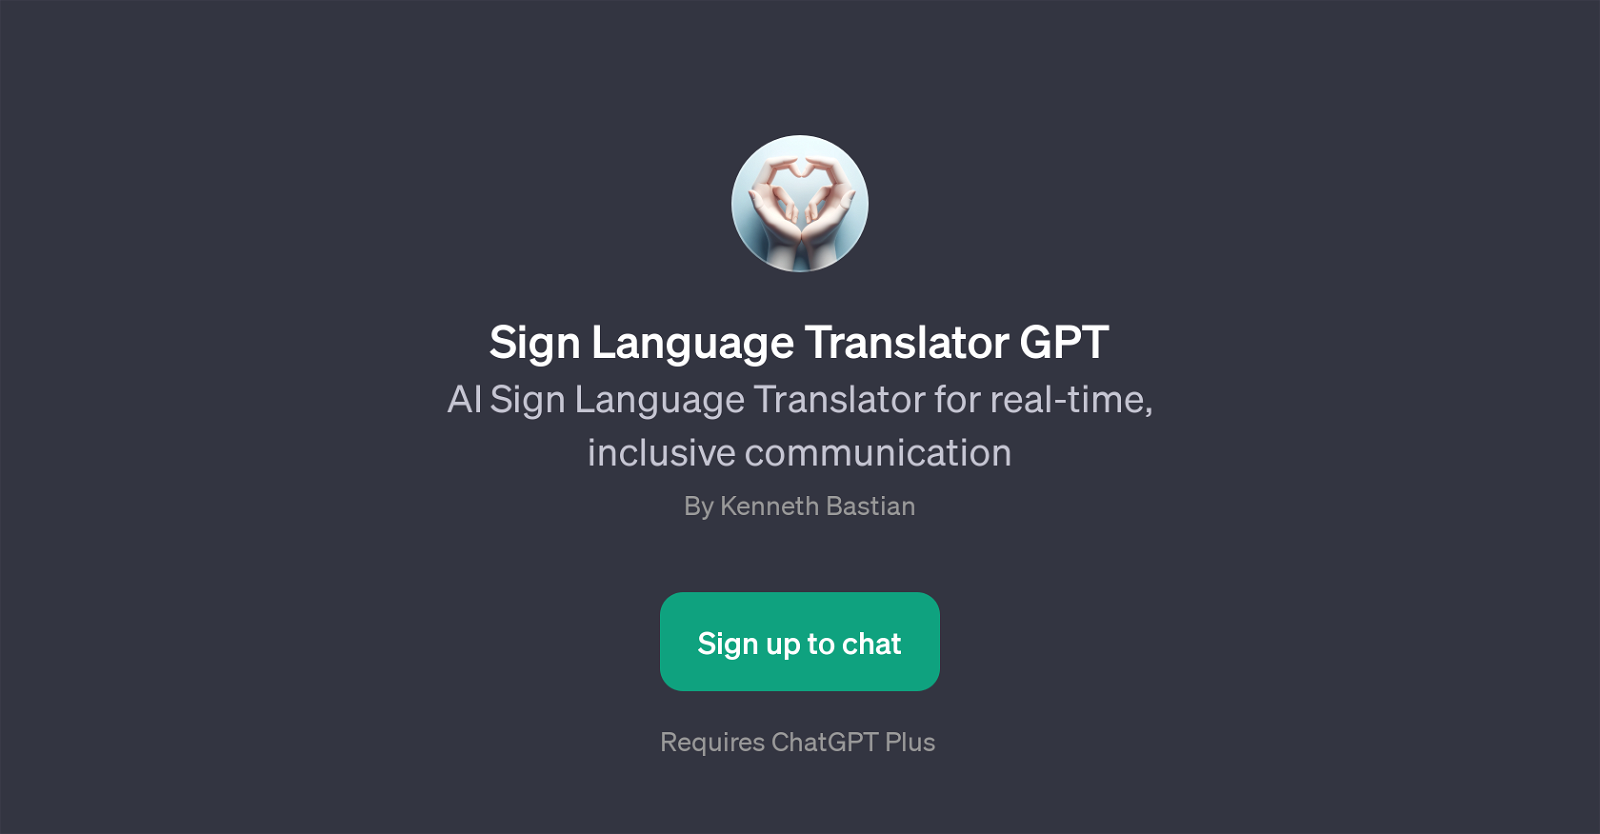 Sign Language Translator GPT website